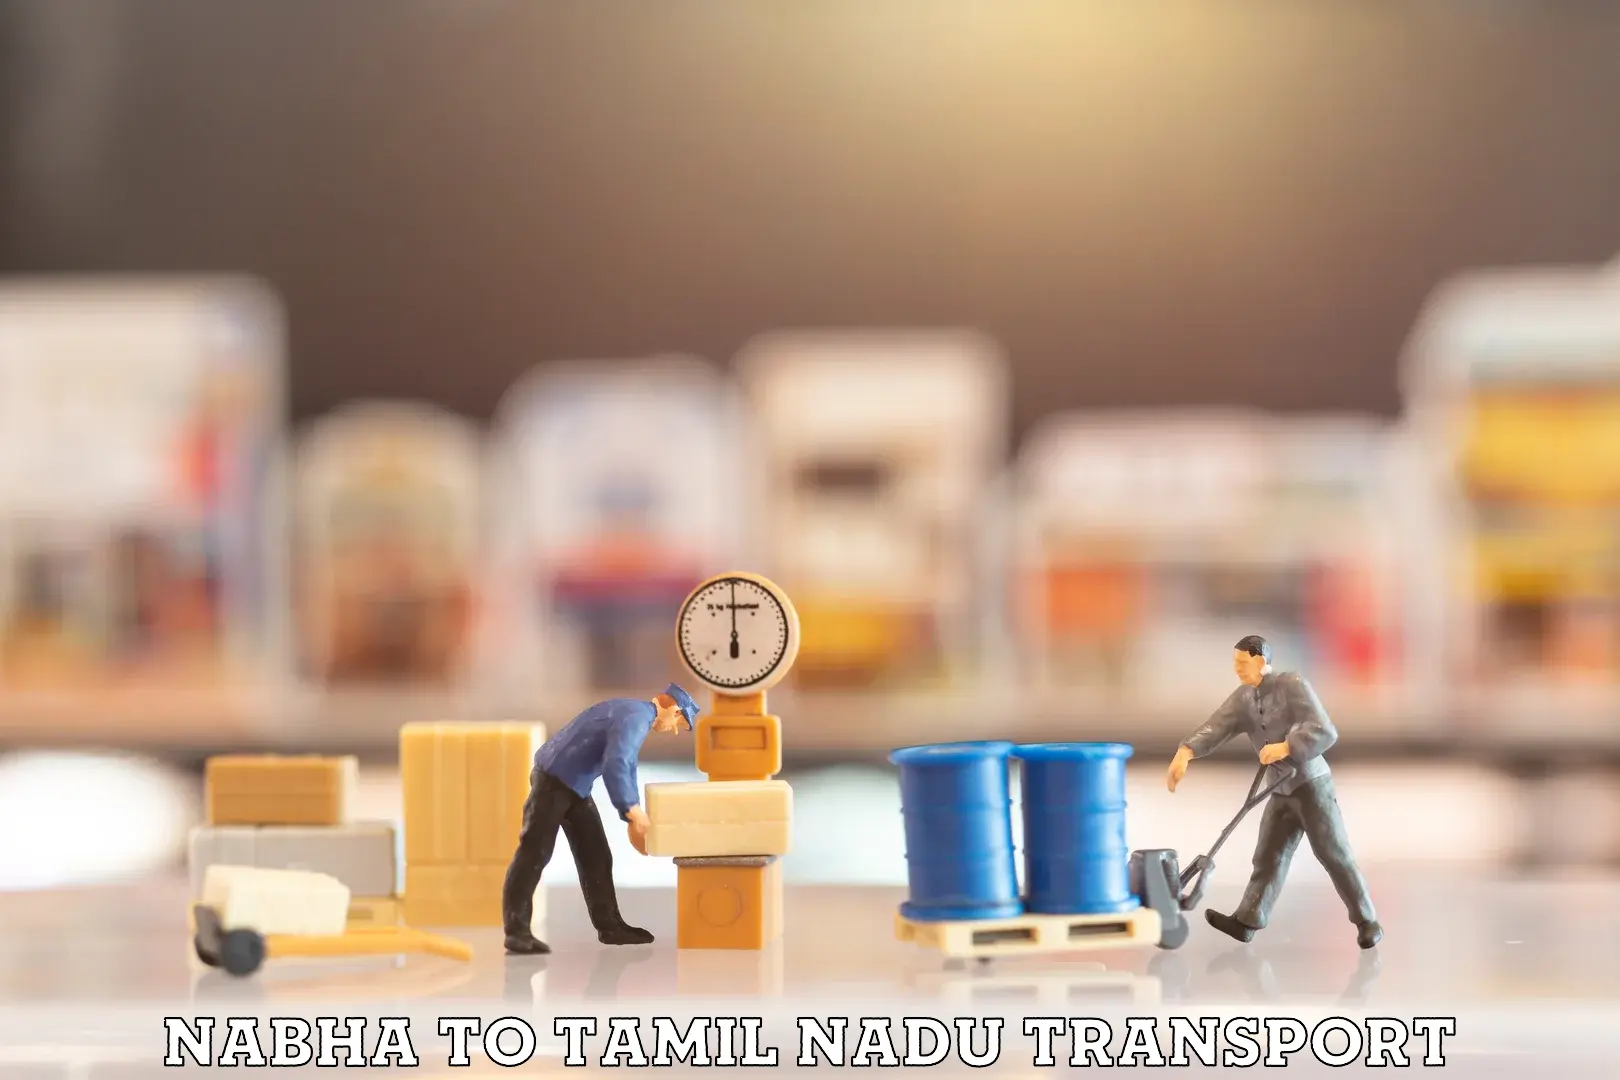 Container transport service Nabha to Thiruthuraipoondi